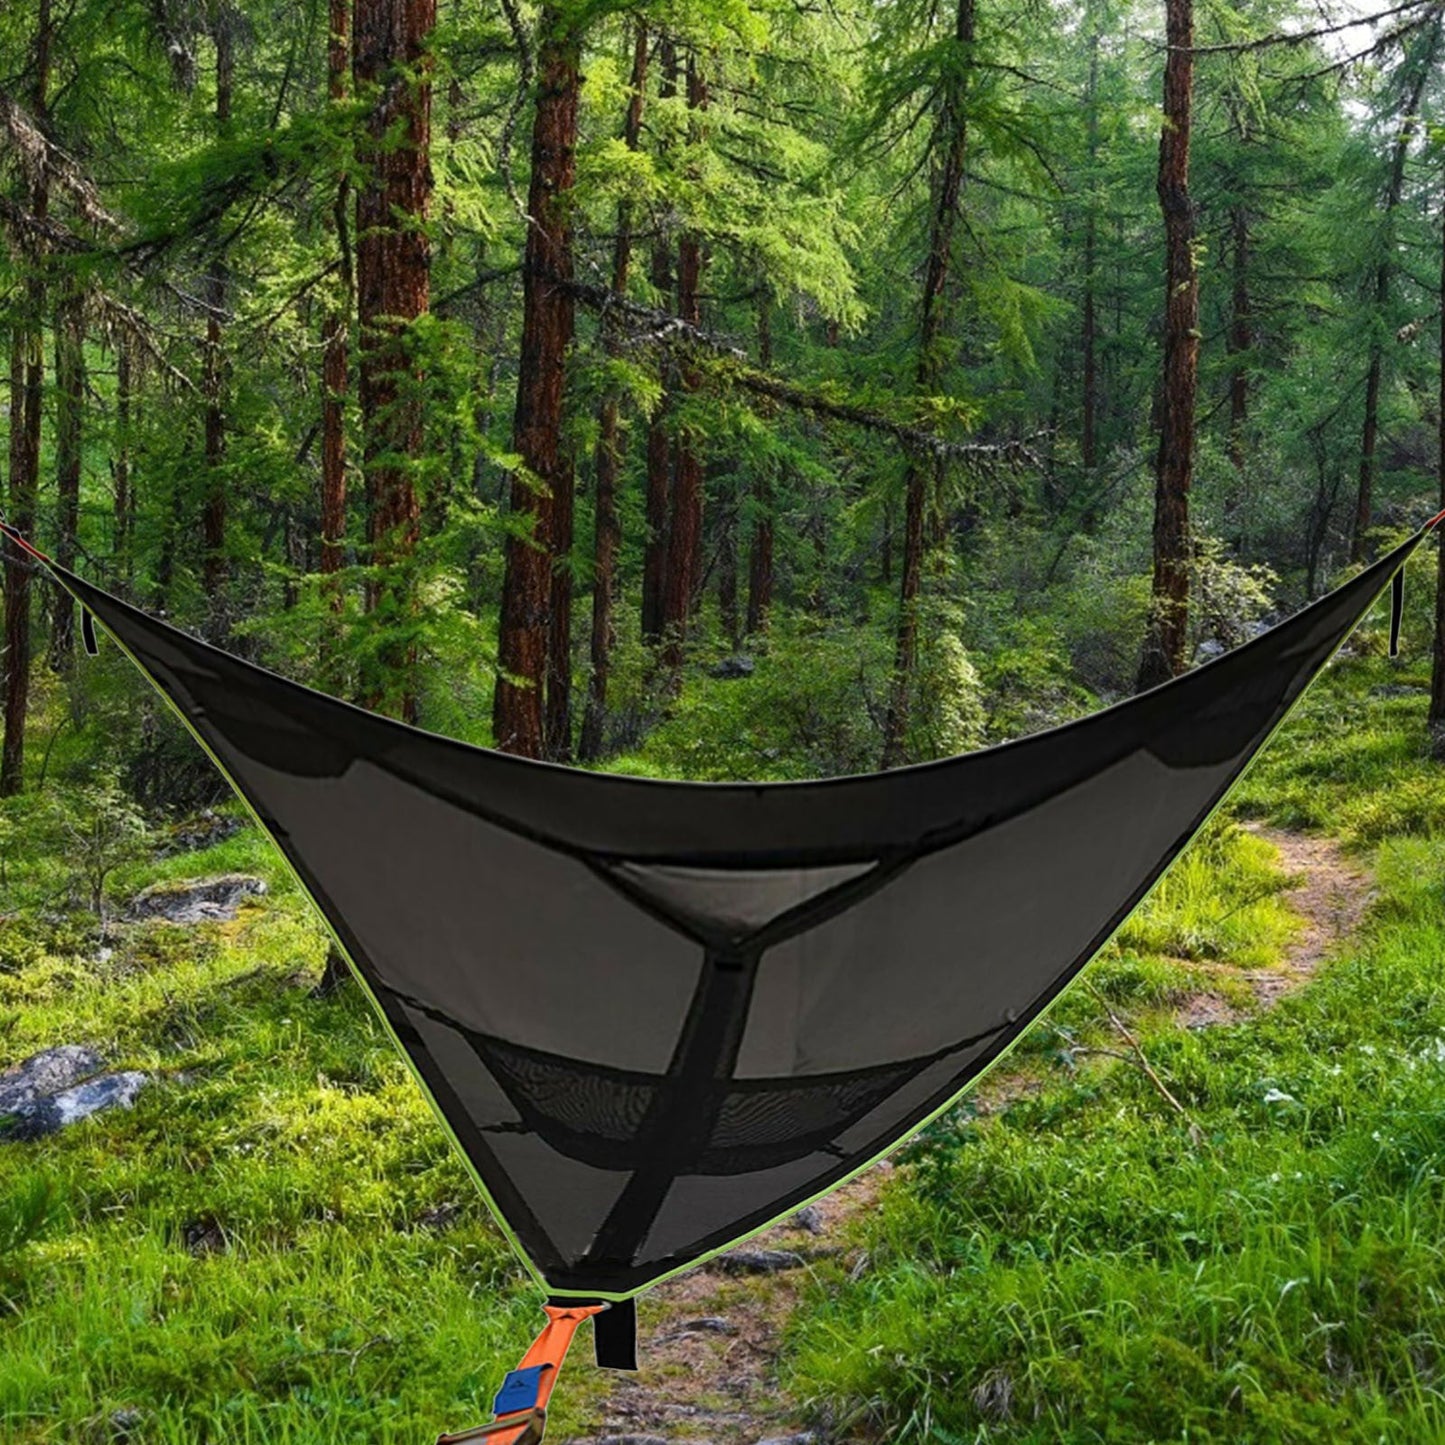 Multi Person Portable Hammock Outdoor Camping Hammock